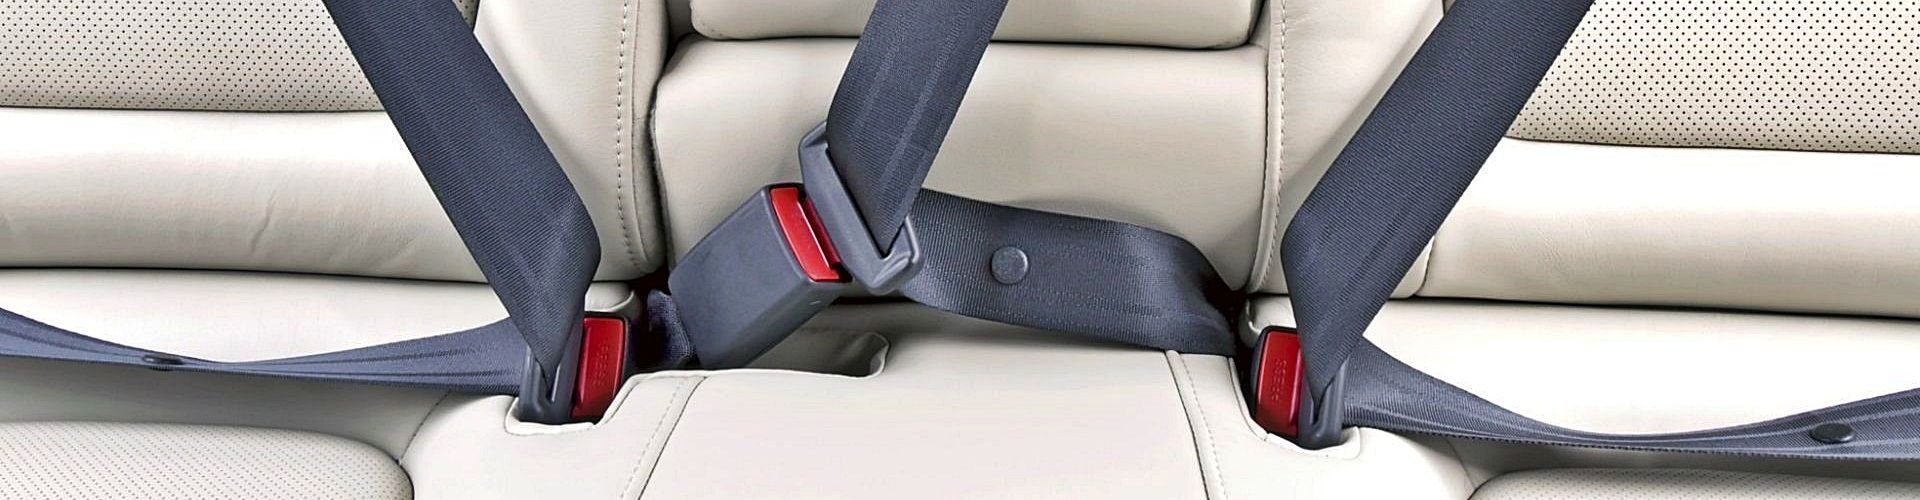 Cómo arreglar cinturón de seguridad del